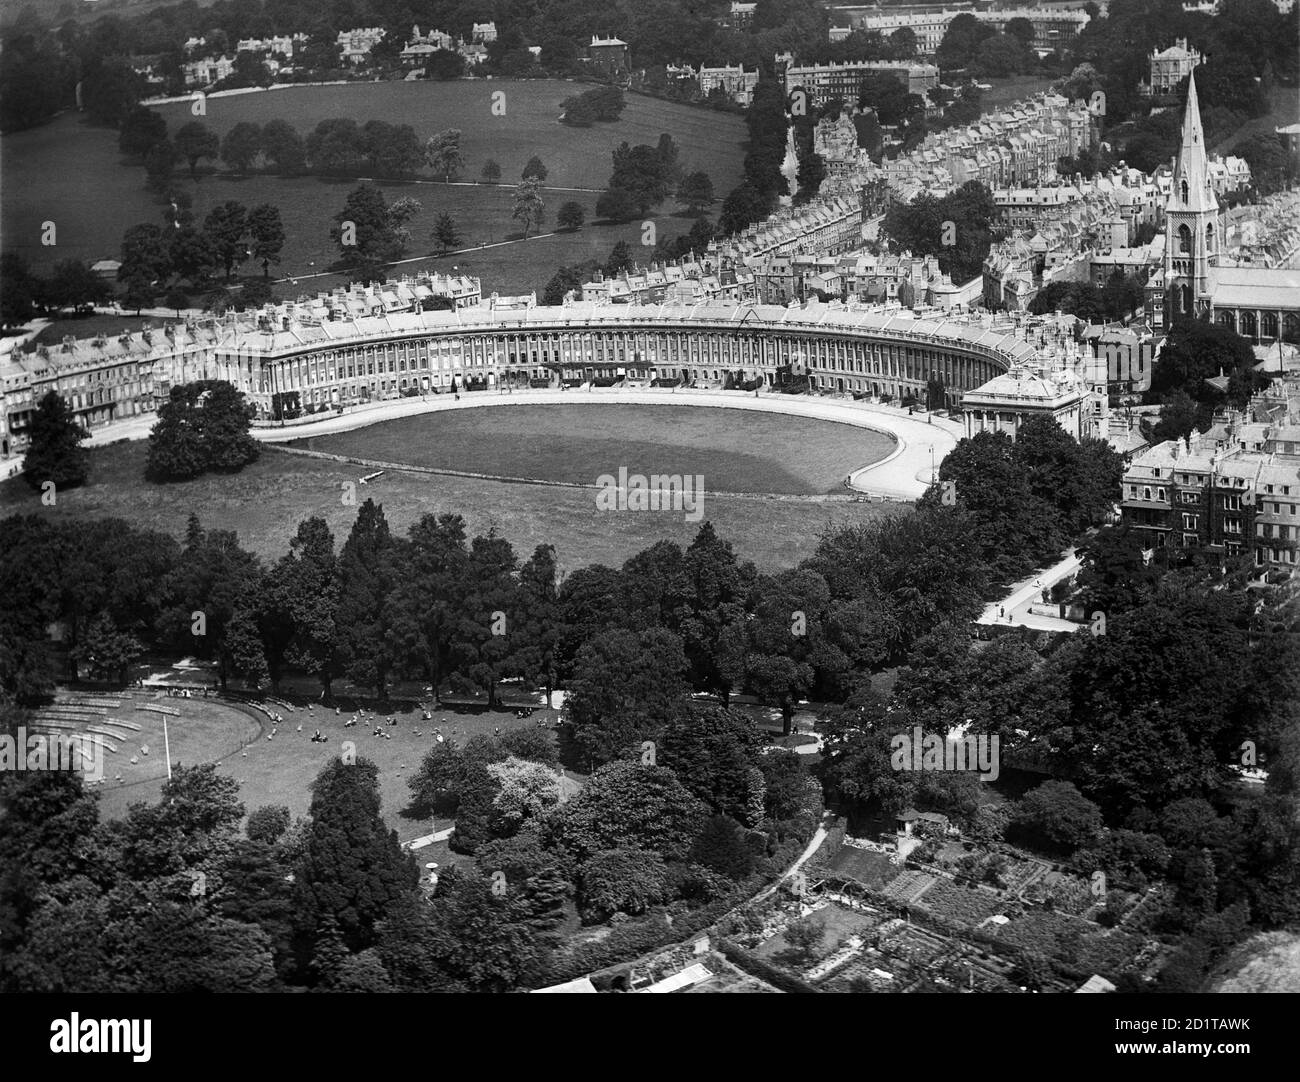 BATH, Somerset. Luftaufnahme des Royal Crescent, Bath, erbaut zwischen 1767 und 1774 von John Wood. Es gilt als eines der größten Beispiele der georgischen Architektur. Fotografiert im Juli 1920. Aerofilms Collection (siehe Links). Stockfoto